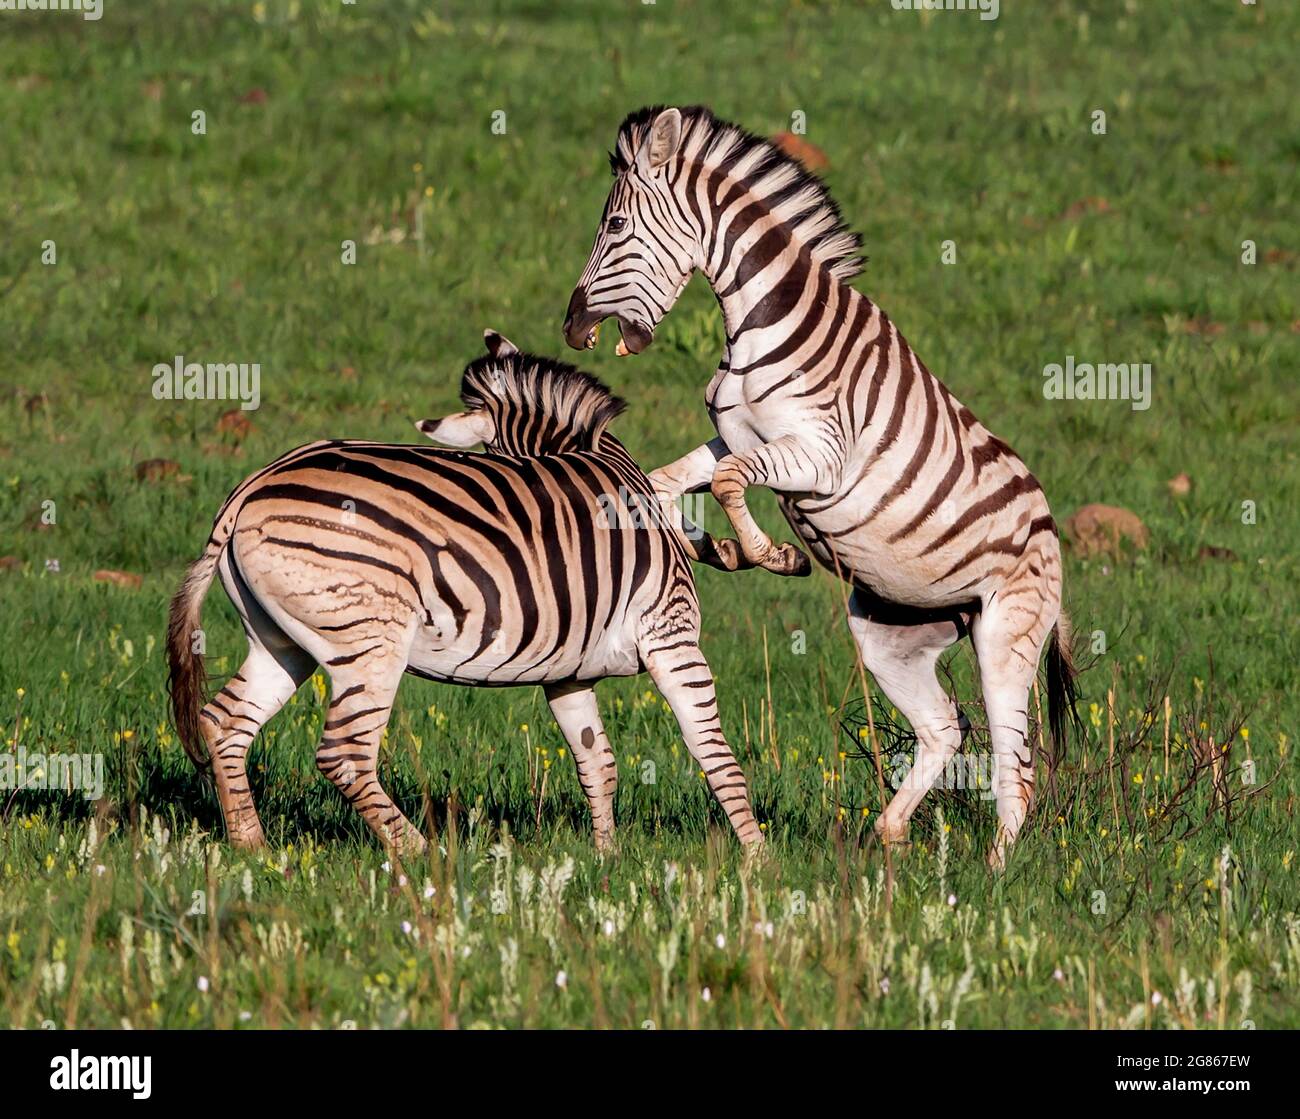 Gli stalloni zebra lotteranno per la dominanza nella mandria. Un animale molto sociale trovato in piccoli gruppi a mandrie estremamente grandi che dipende dalla qualità e. Foto Stock